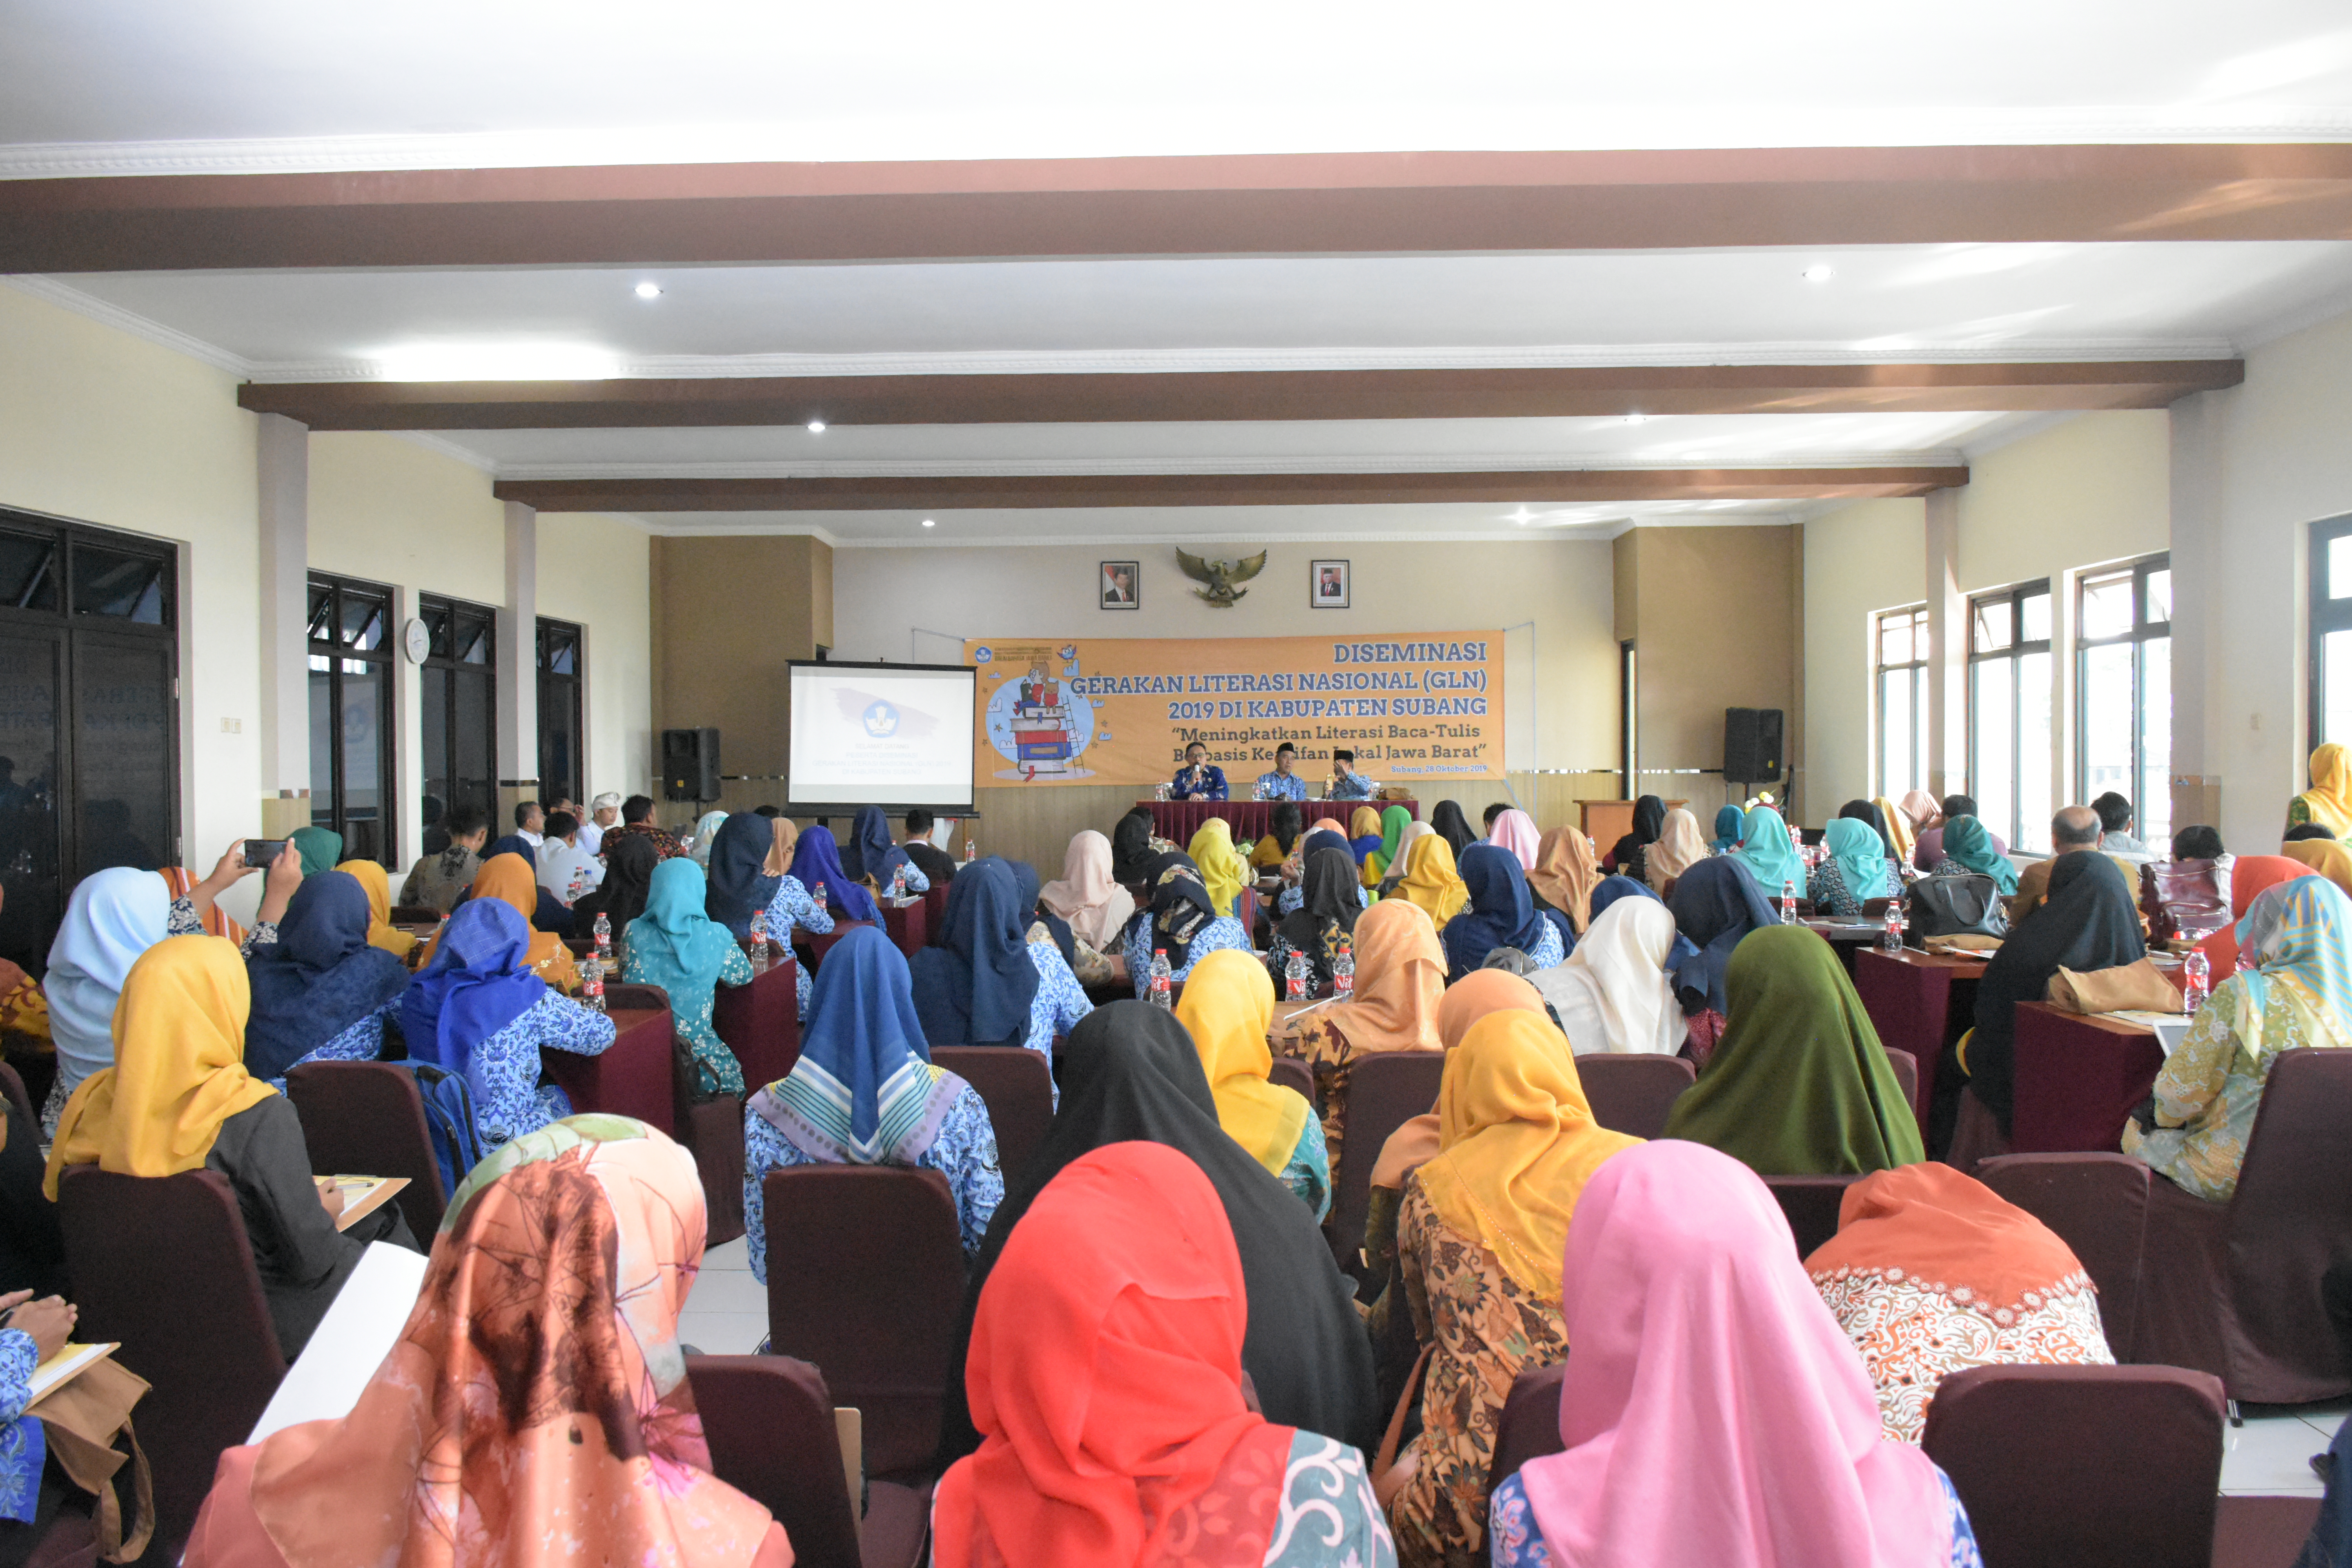 Balai Bahasa Jawa Barat Gelar Diseminasi GLN